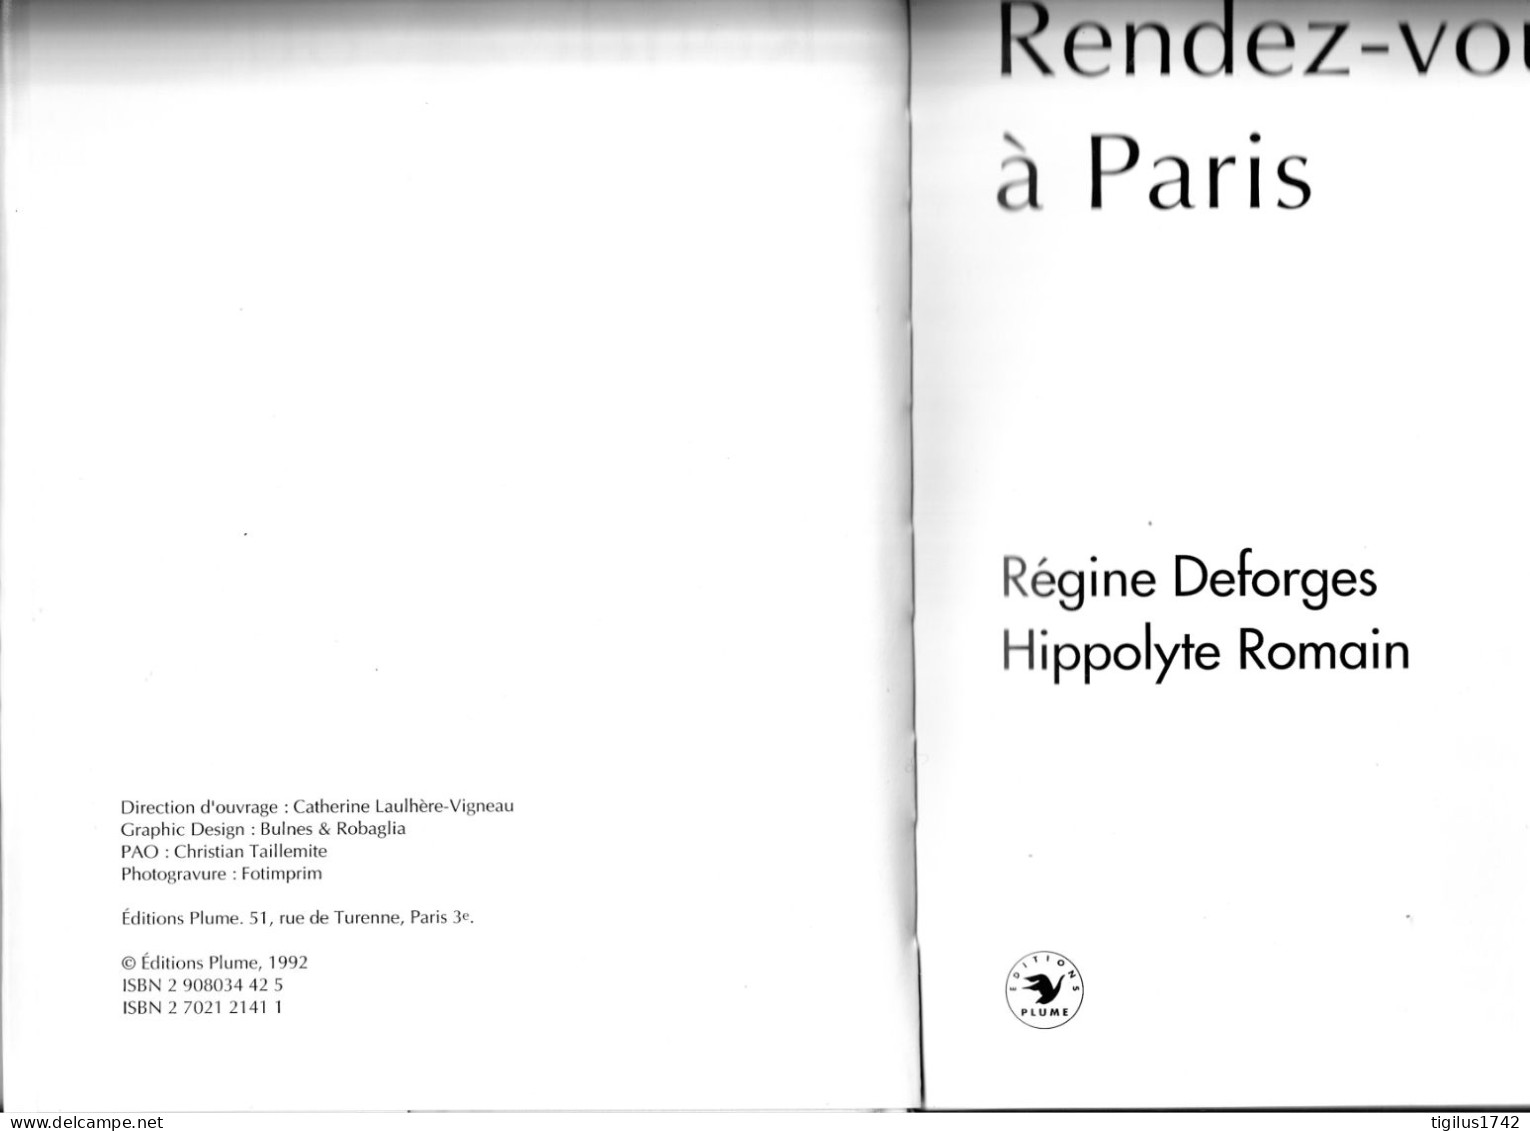 Régine Desforges, Hippolyte Romain, 1992. Rendez-vous à Paris. Ed. Plume - Französische Autoren